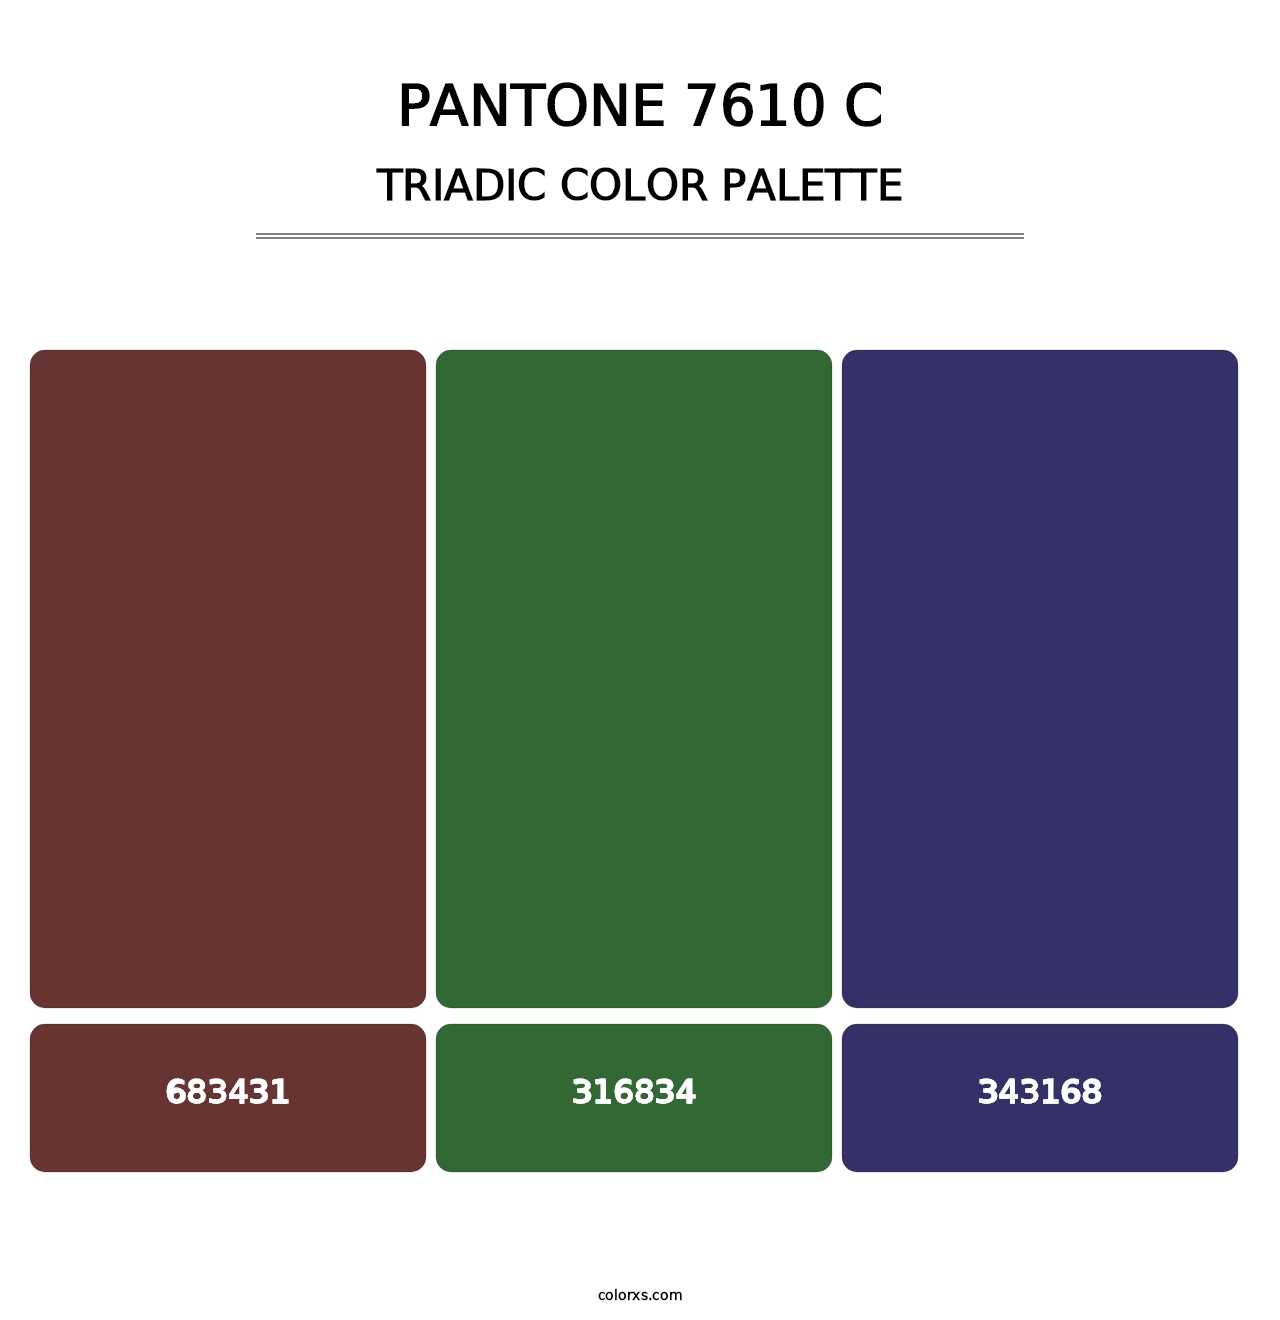 PANTONE 7610 C - Triadic Color Palette